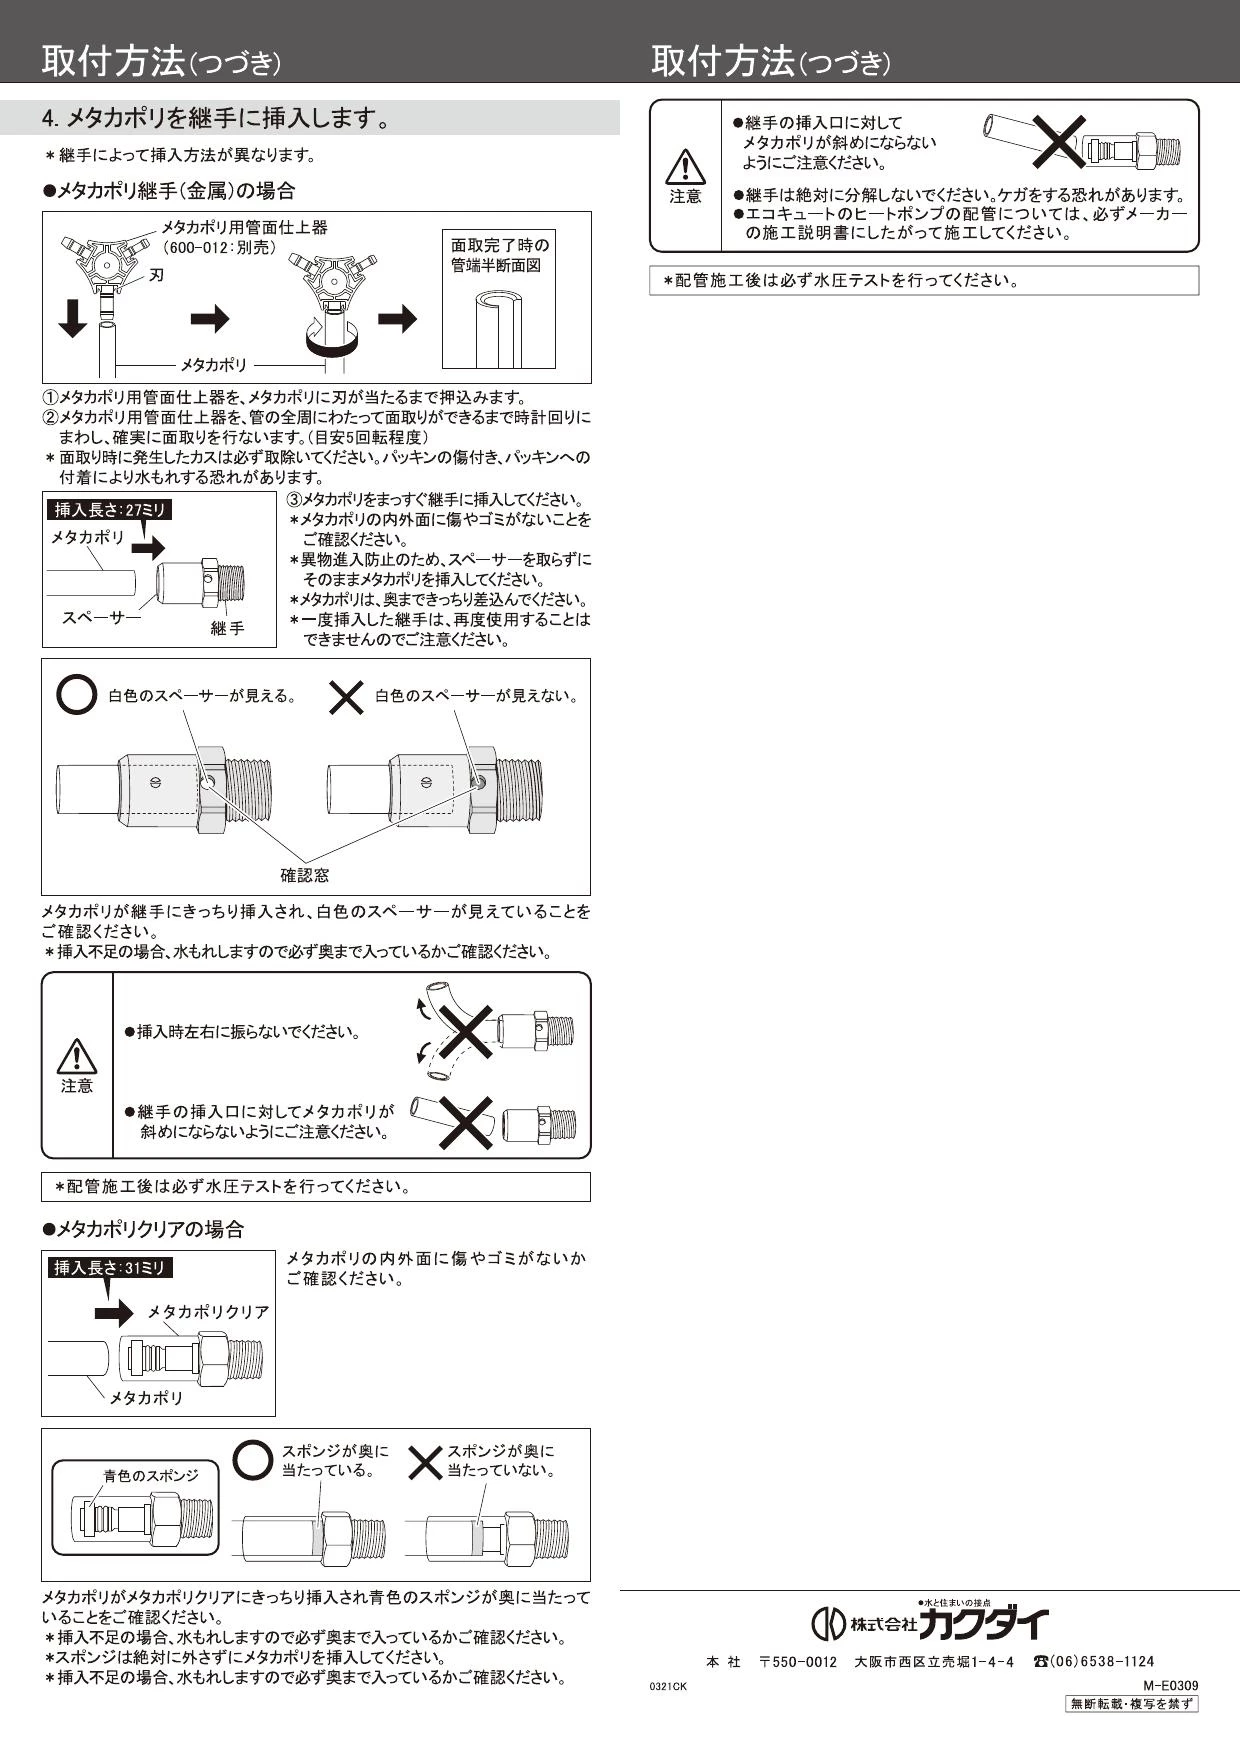 カクダイ 672-041-25 【JWWA認証品】 メタカポリ(エコキュート用)//10